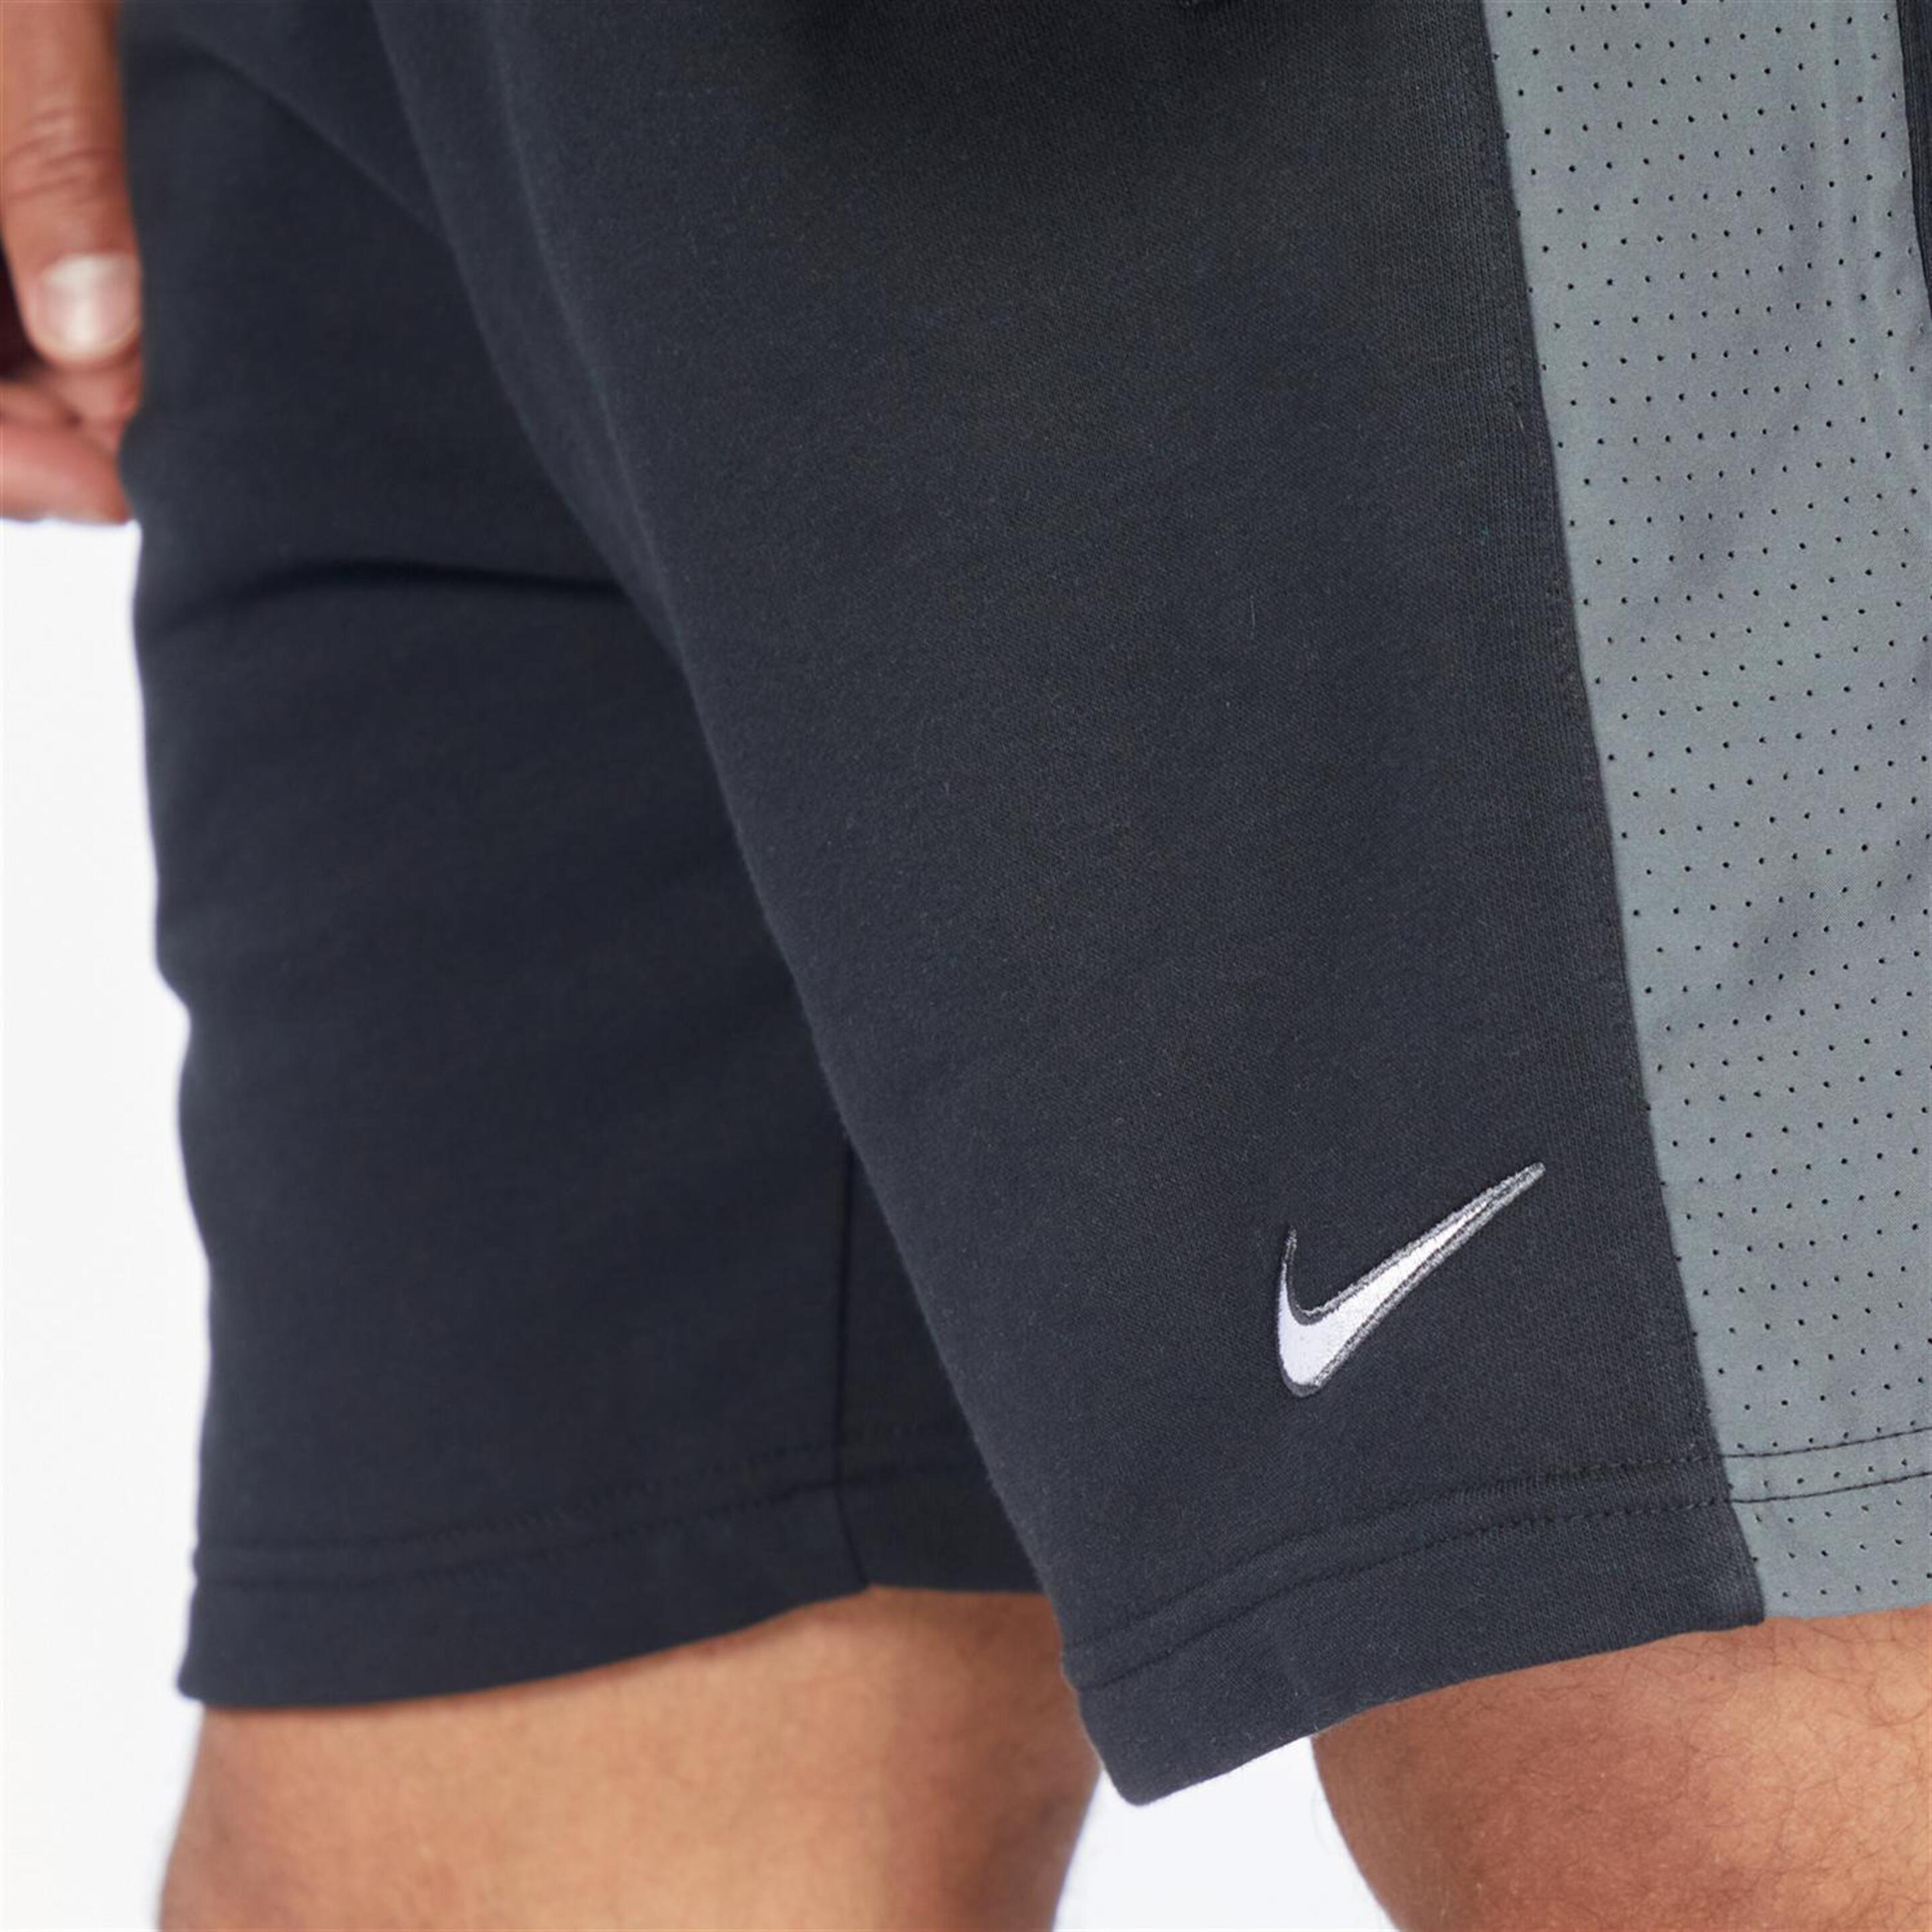 Nike Sp - Negro - Pantalón Corto Hombre